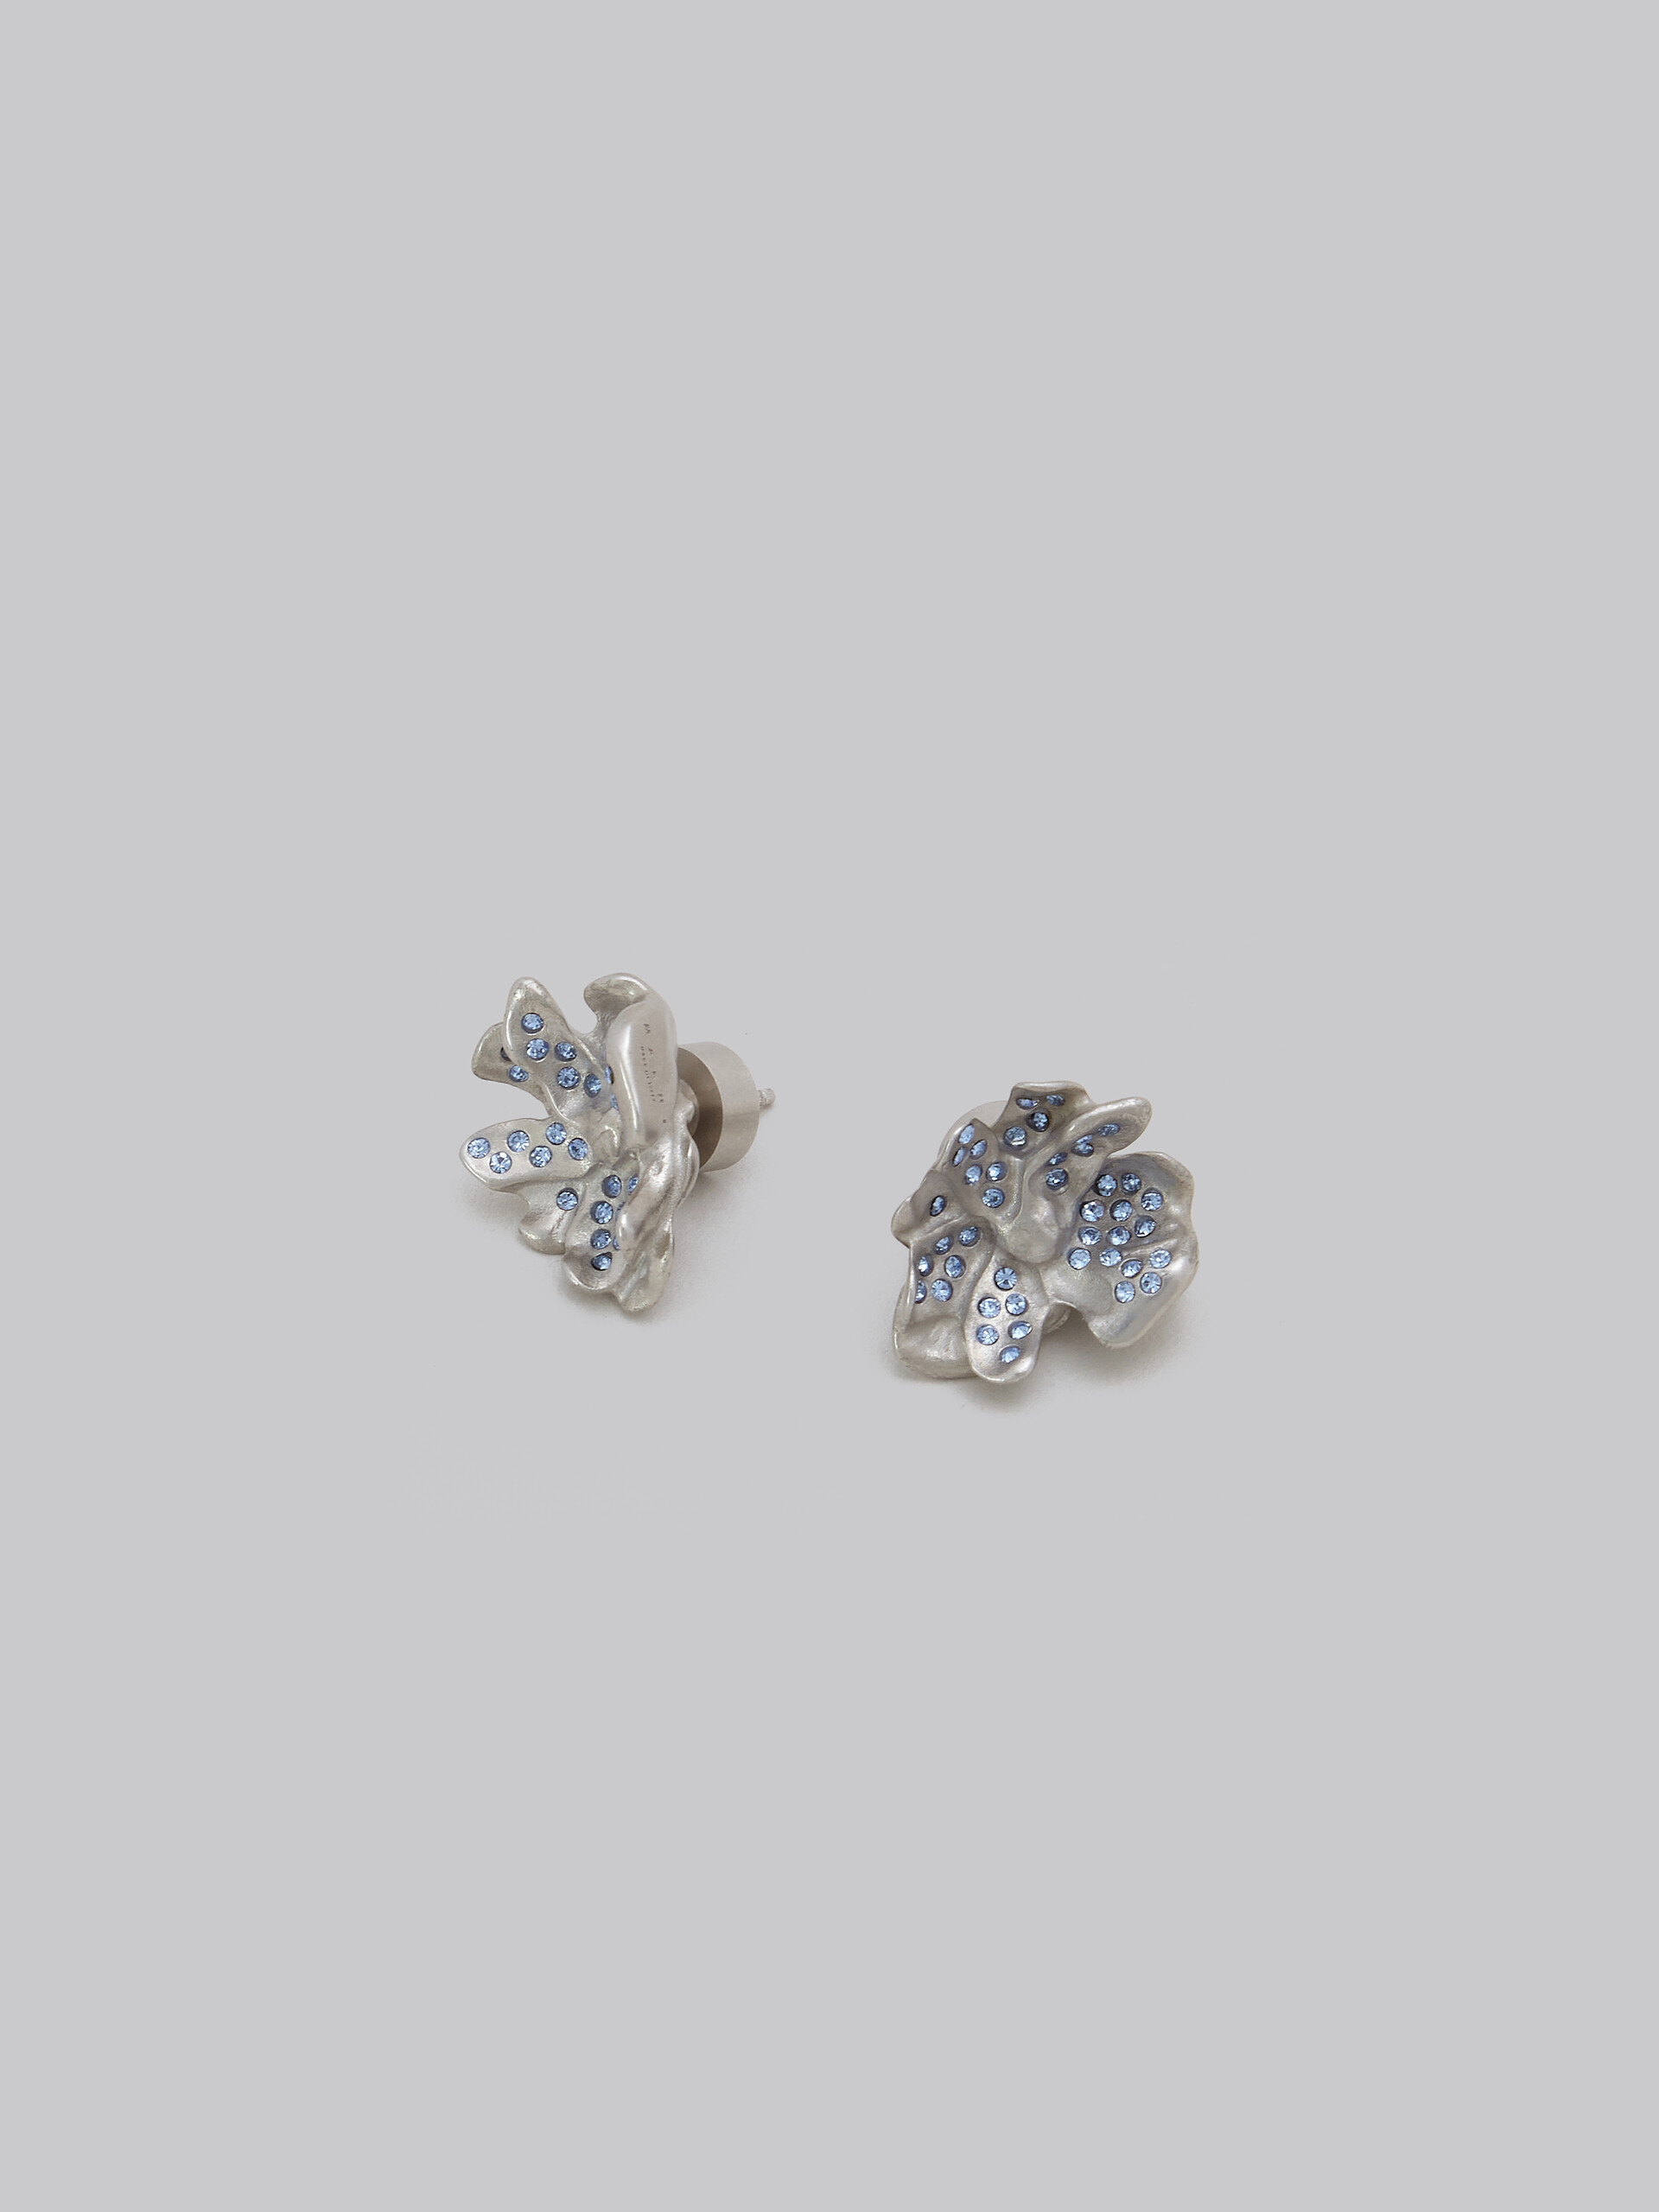 Pendientes de botón metálicos con forma de flor y cristales azules - Pendientes - Image 4